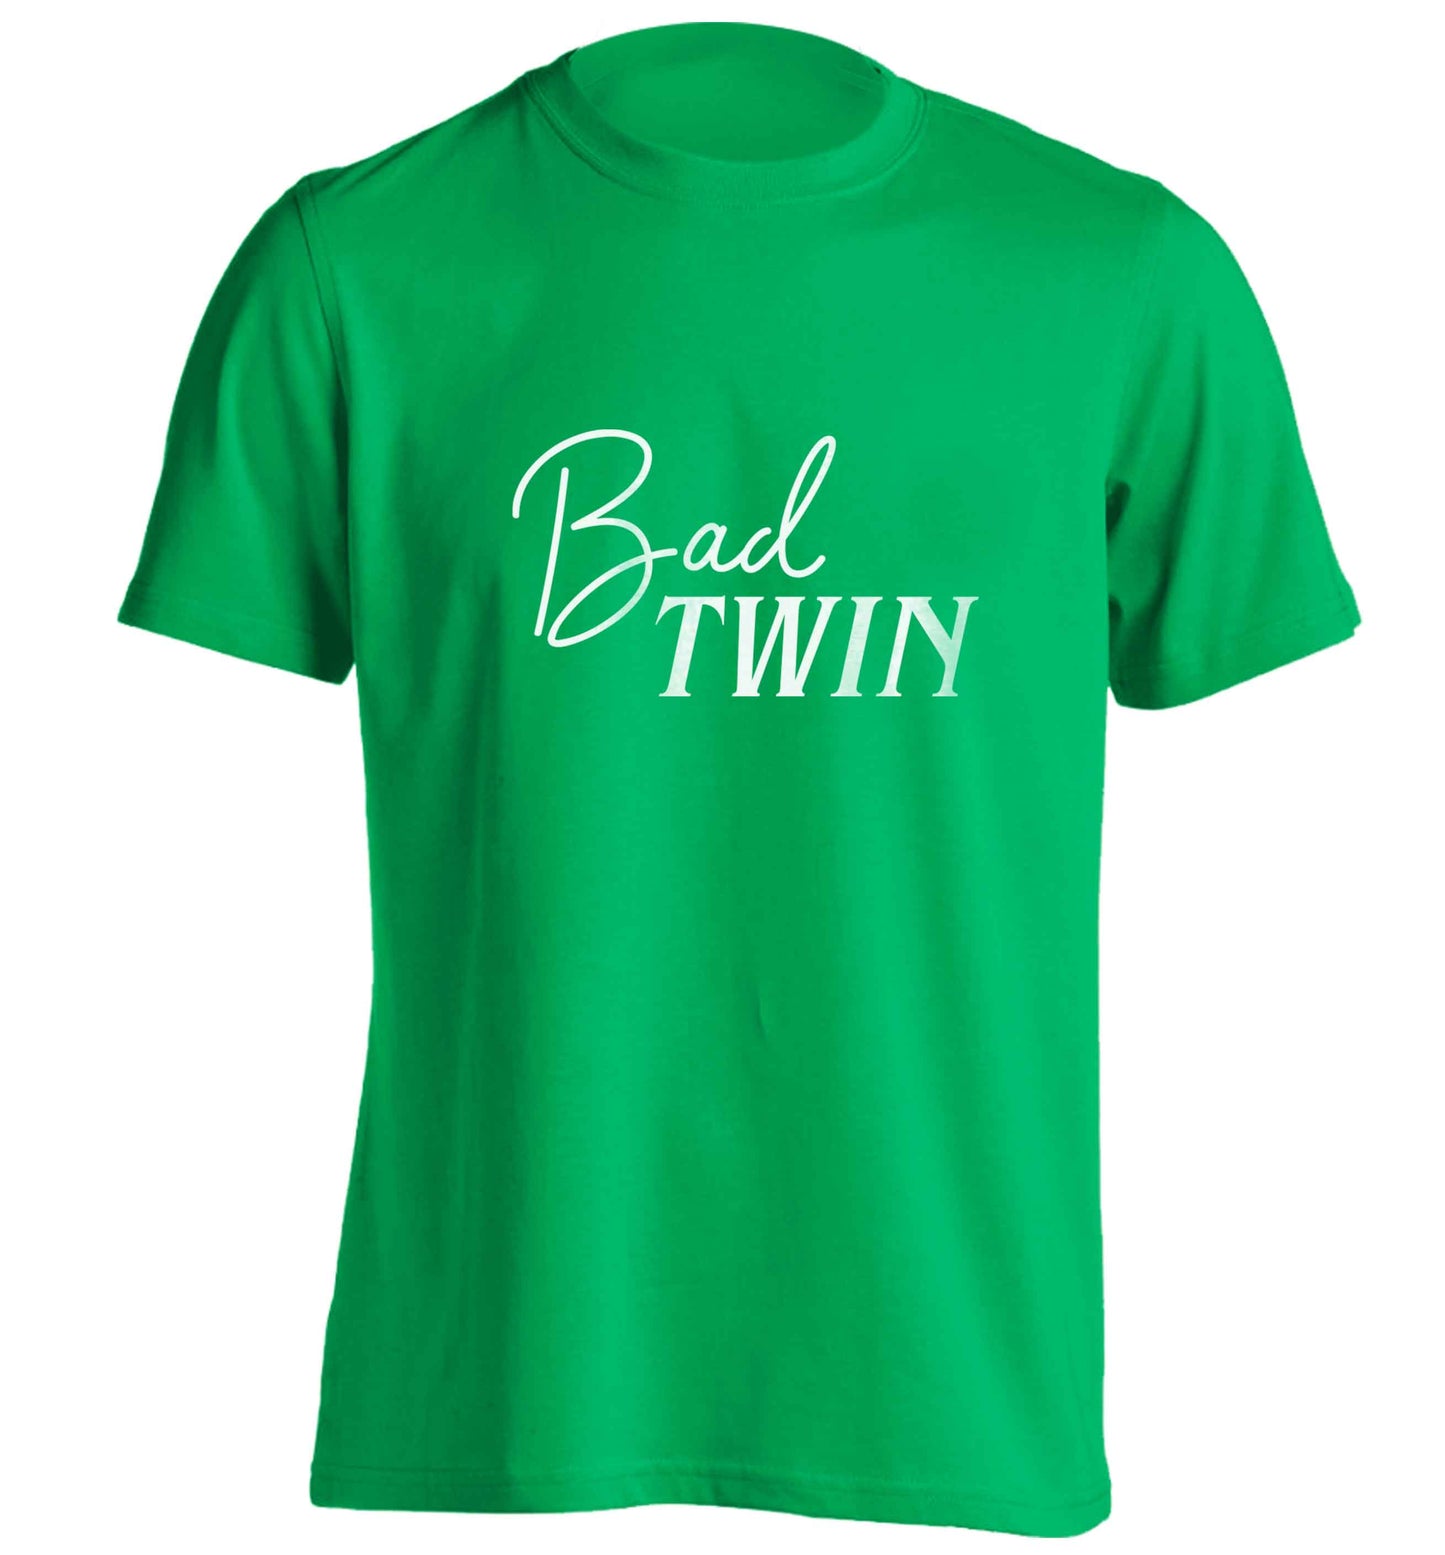 Bad twin adults unisex green Tshirt 2XL